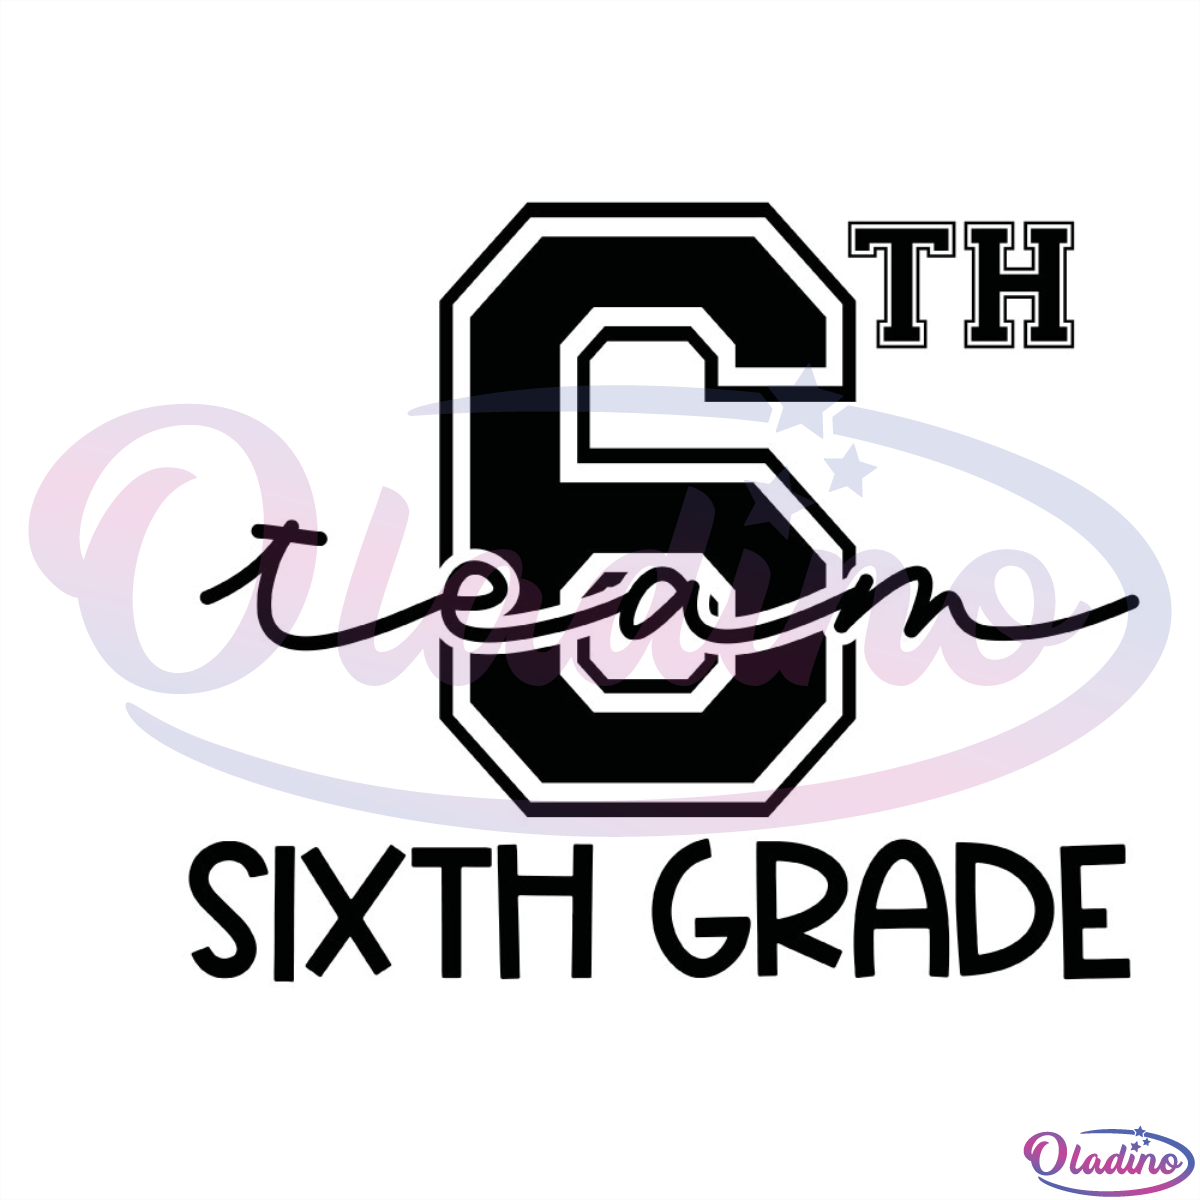 6th team sixth grade SVG Digital File, 6th SVG, team SVG